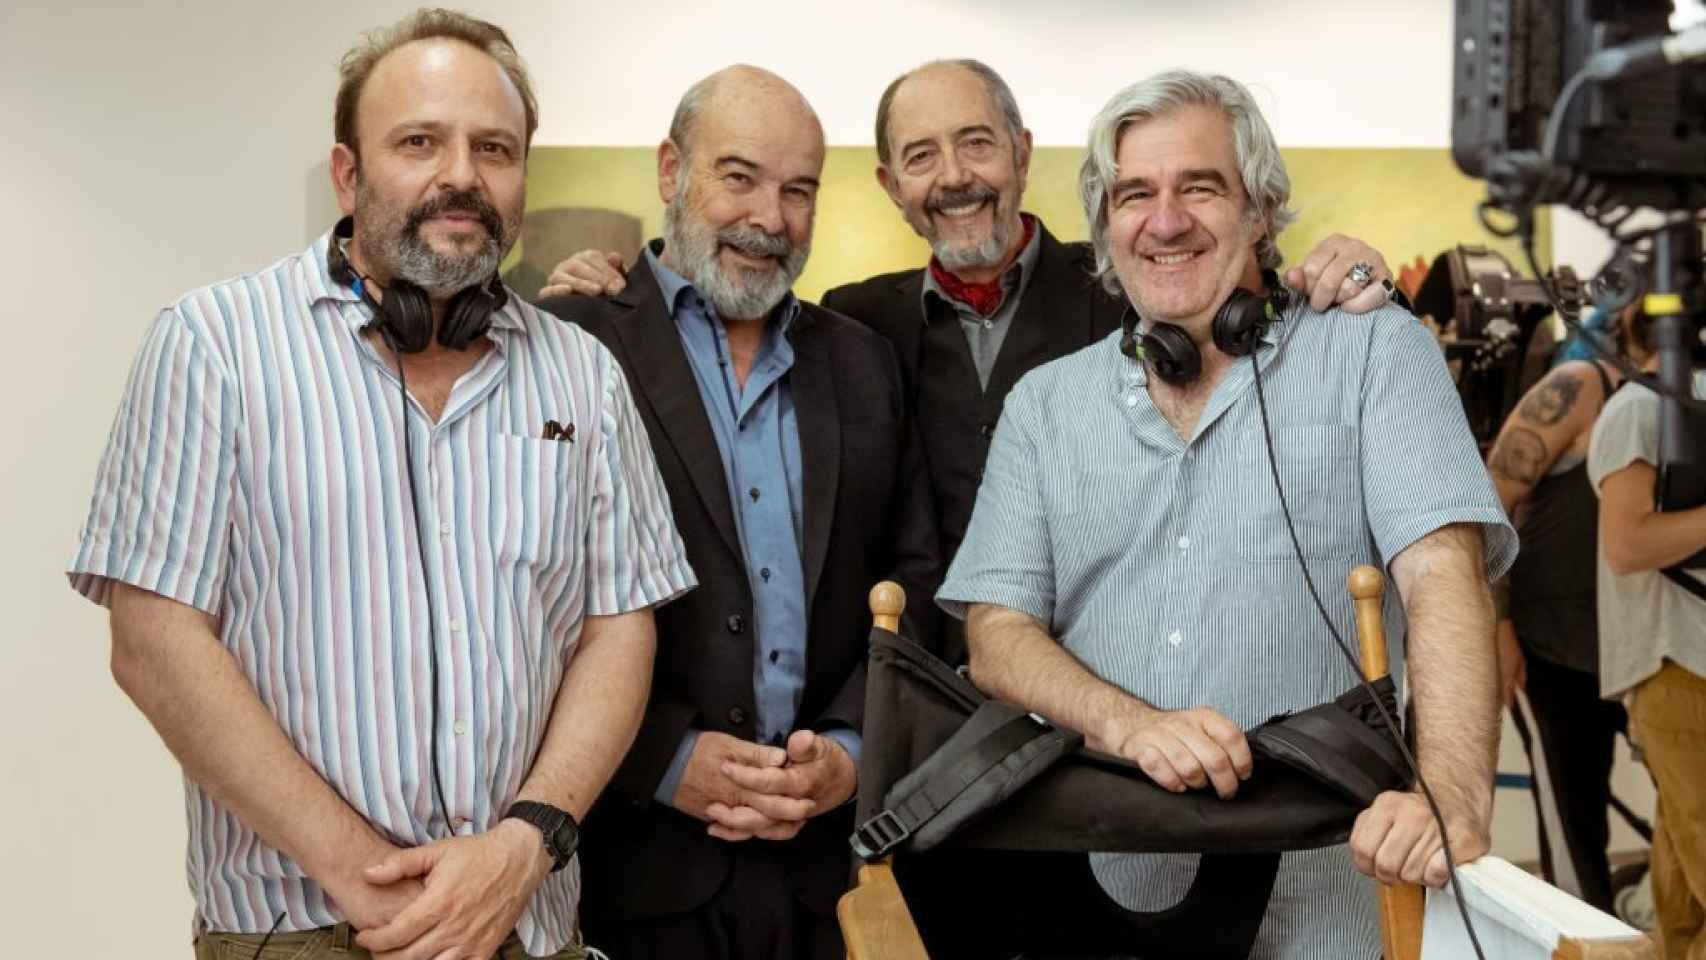 'Sentimos las molestias', la comedia con Miguel Rellán y Antonio Resines, llegará a Movistar+ en febrero